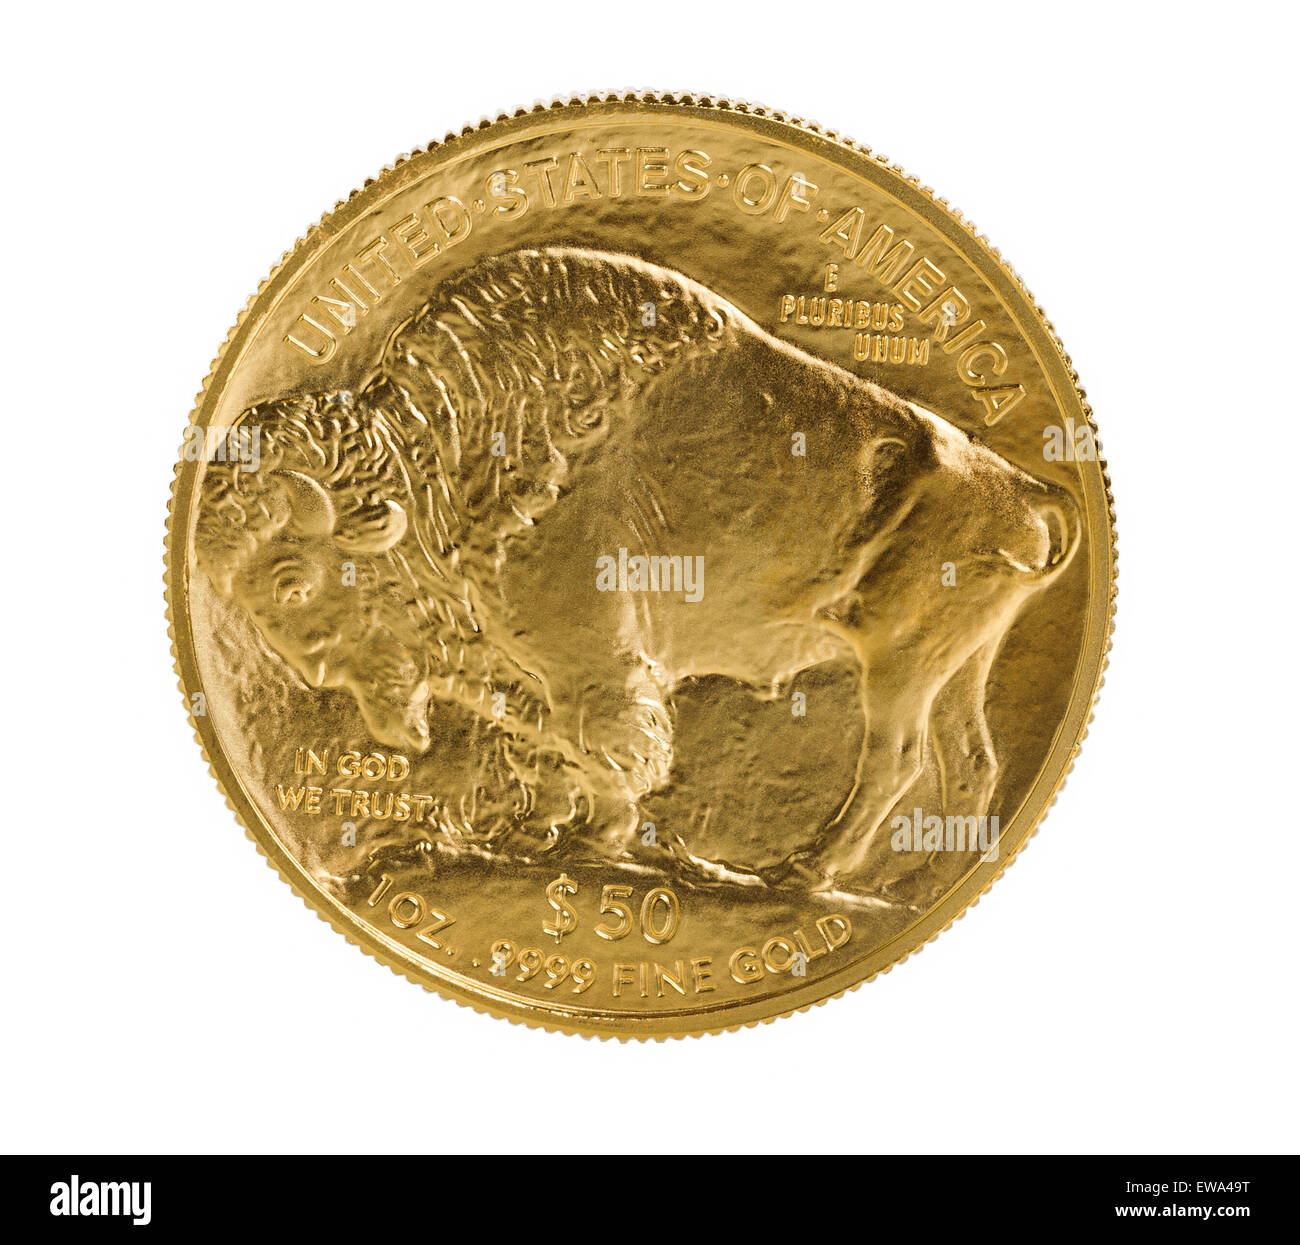 Rückseite des American Gold Buffalo Münze, Feingold, auf rein weißen Hintergrund isoliert. Münze in tadellosem Zustand Stockfoto